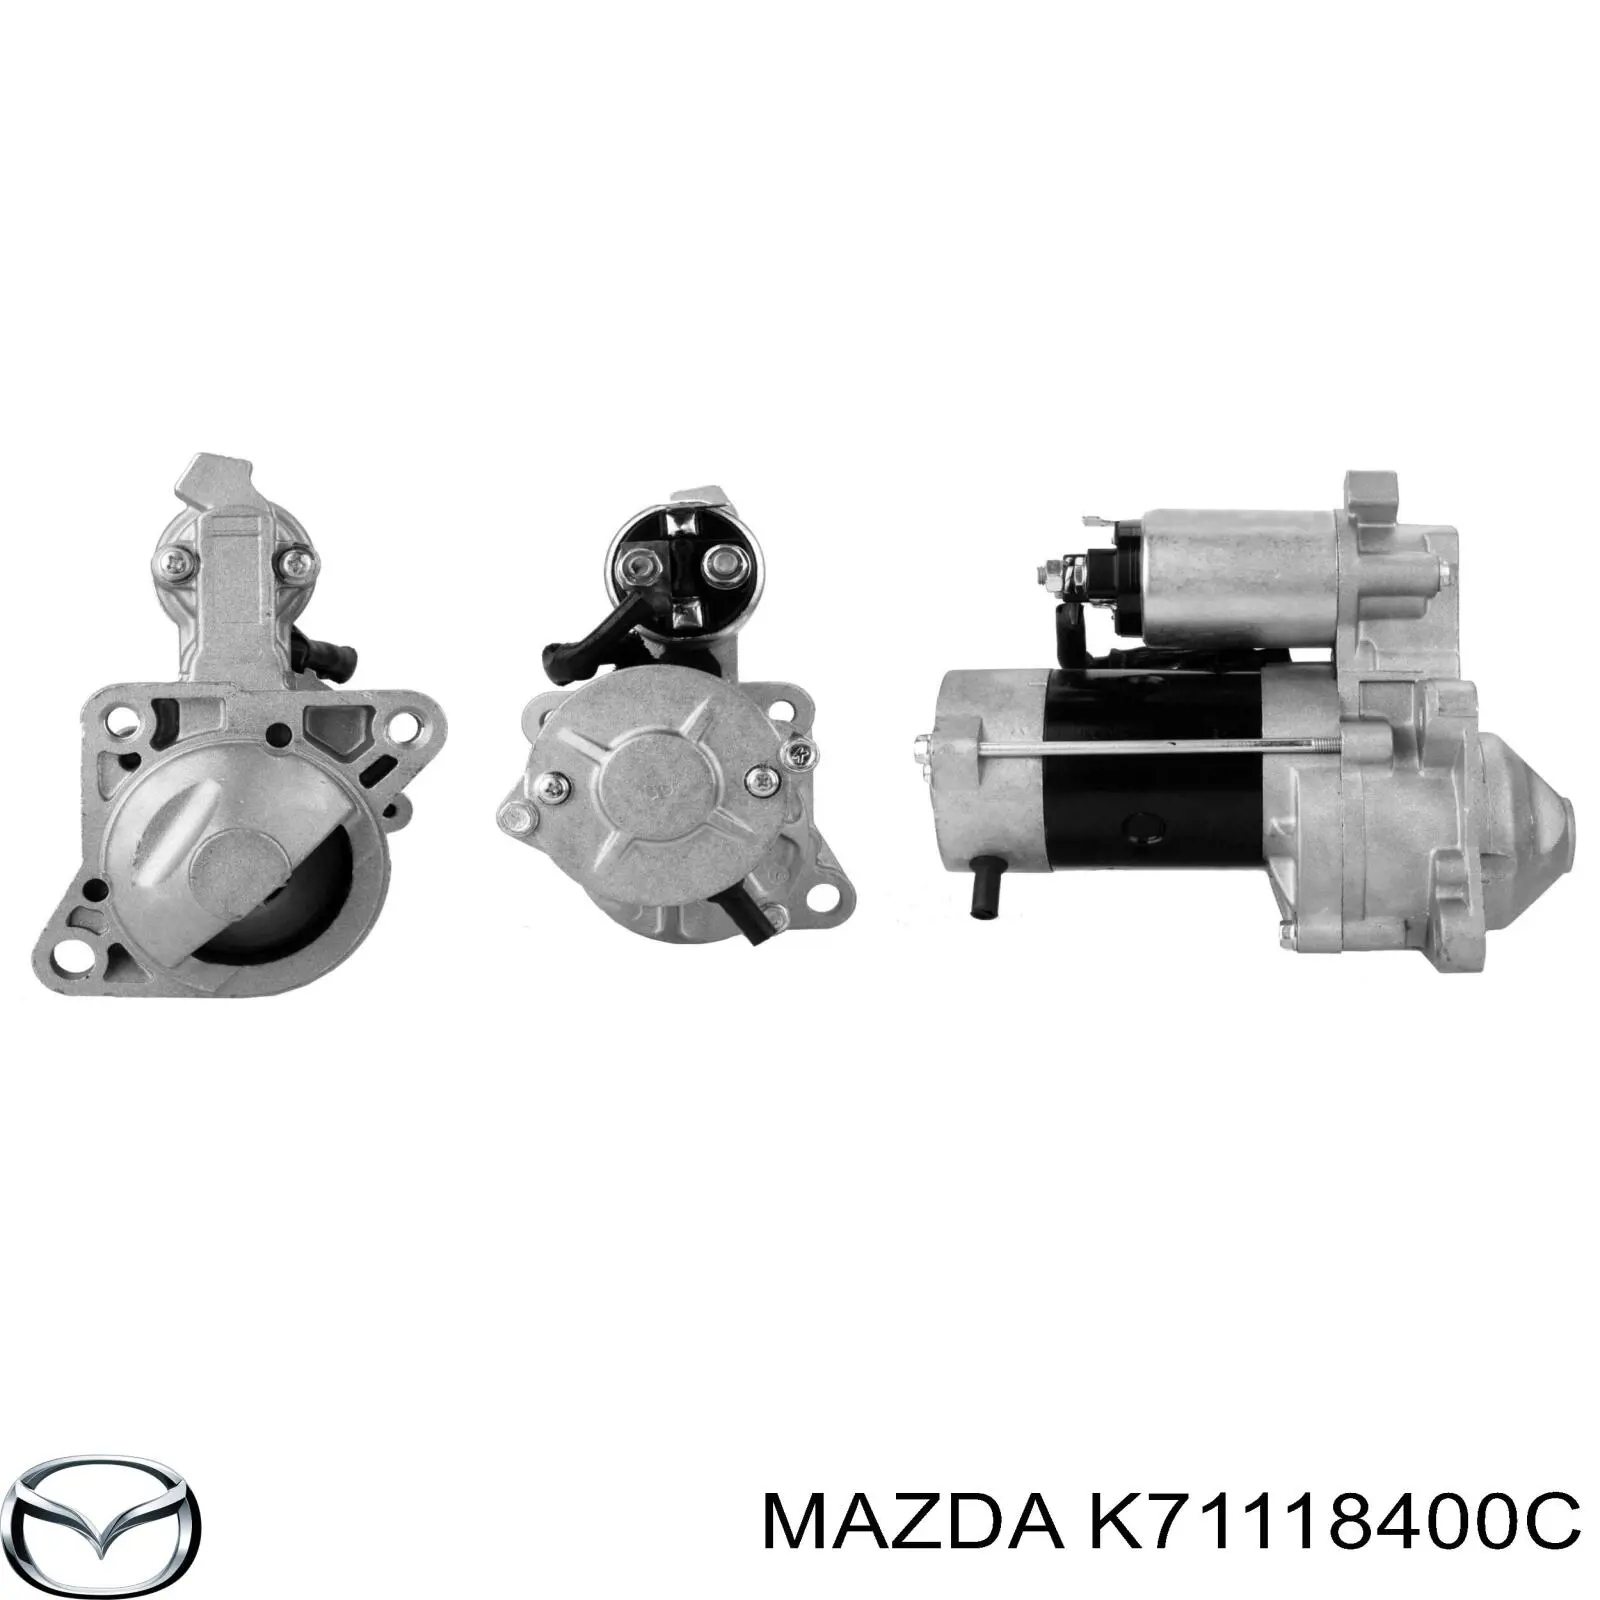 K71118400C Mazda motor de arranque